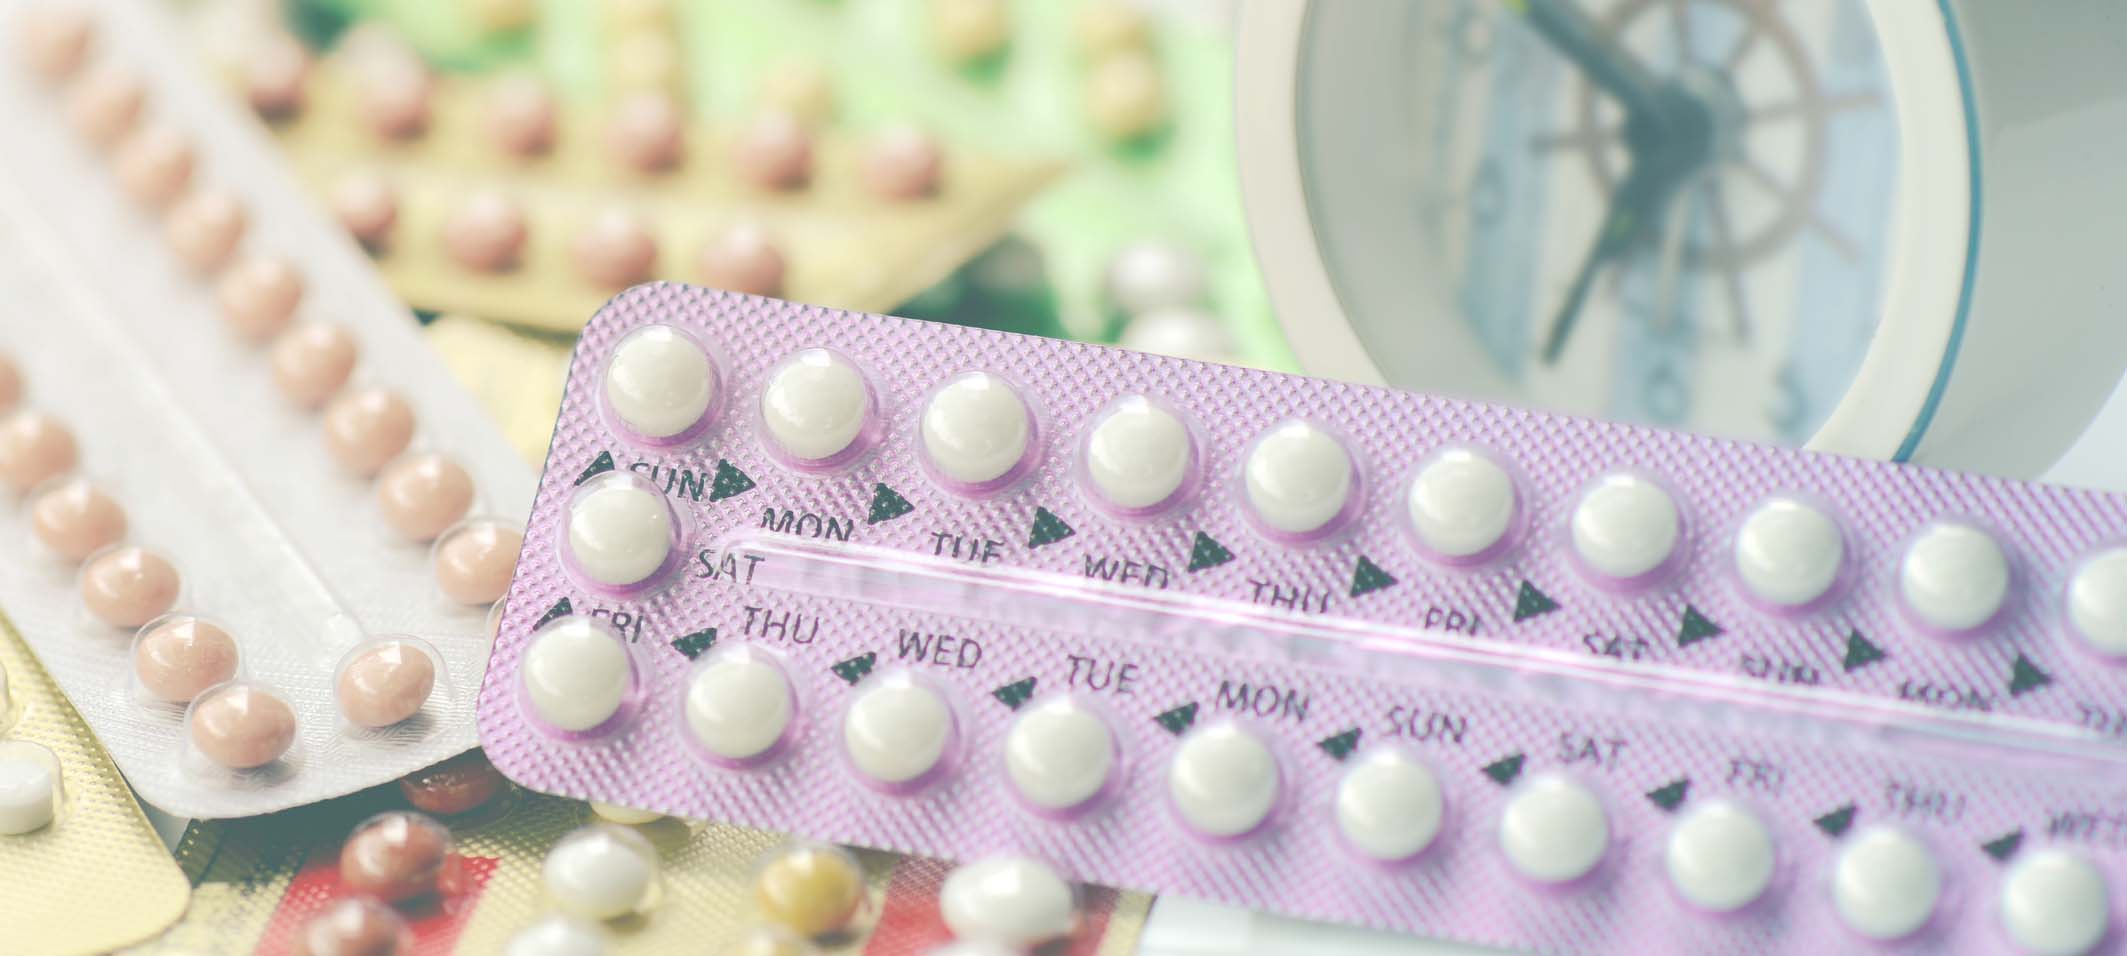 Мужчина пил противозачаточные. Комбинированные оральные контрацептивы. Контрацептивные таблетки. Гормональные противозачаточные препараты. Гормональные таблетки для девочек.